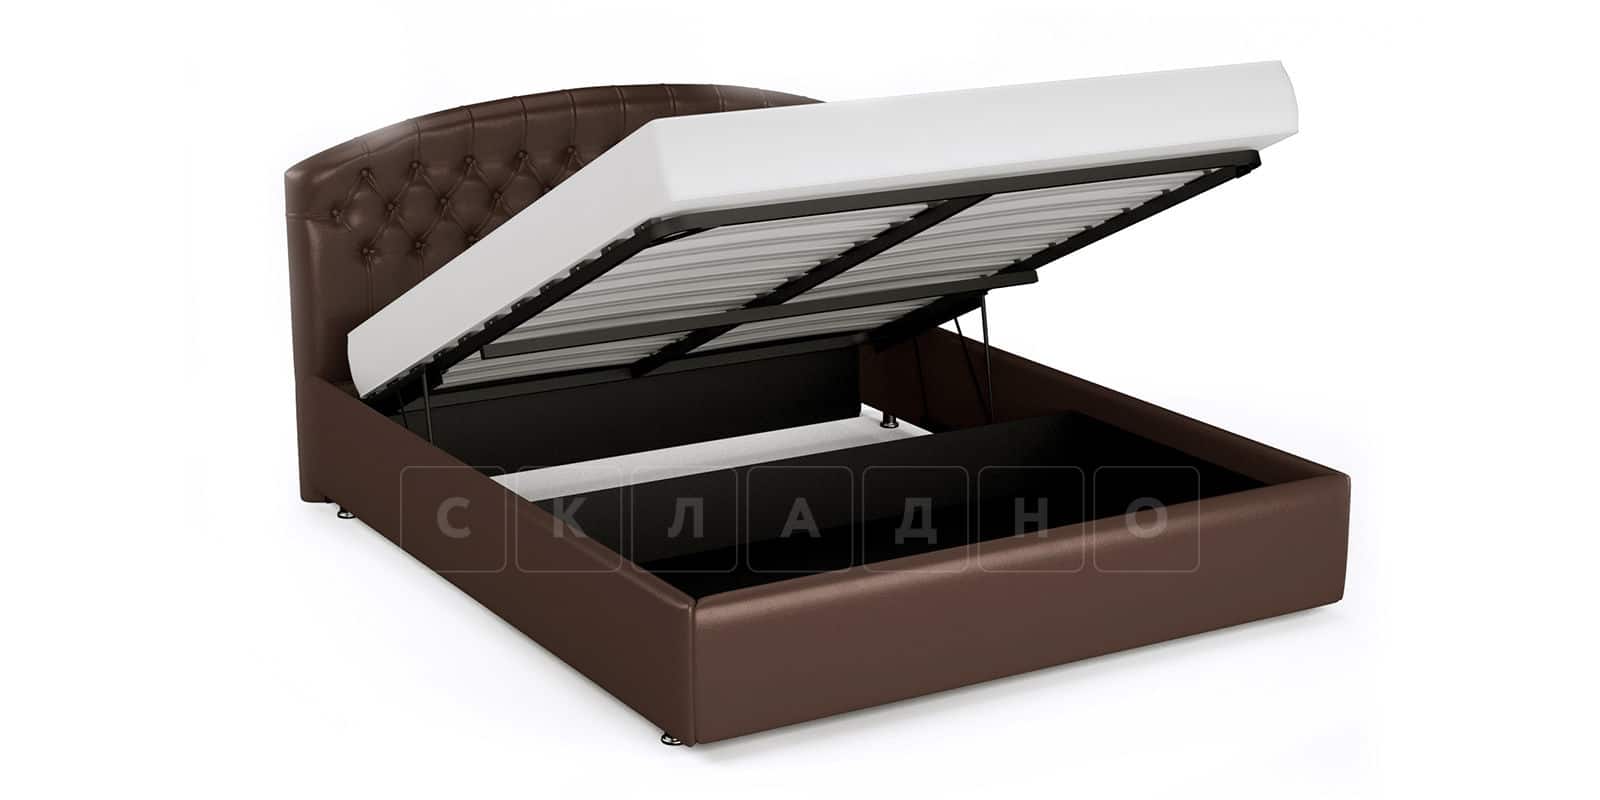 Мягкая кровать Малибу 160 см экокожа шоколадного цвета вариант 1 фото 2 | интернет-магазин Складно